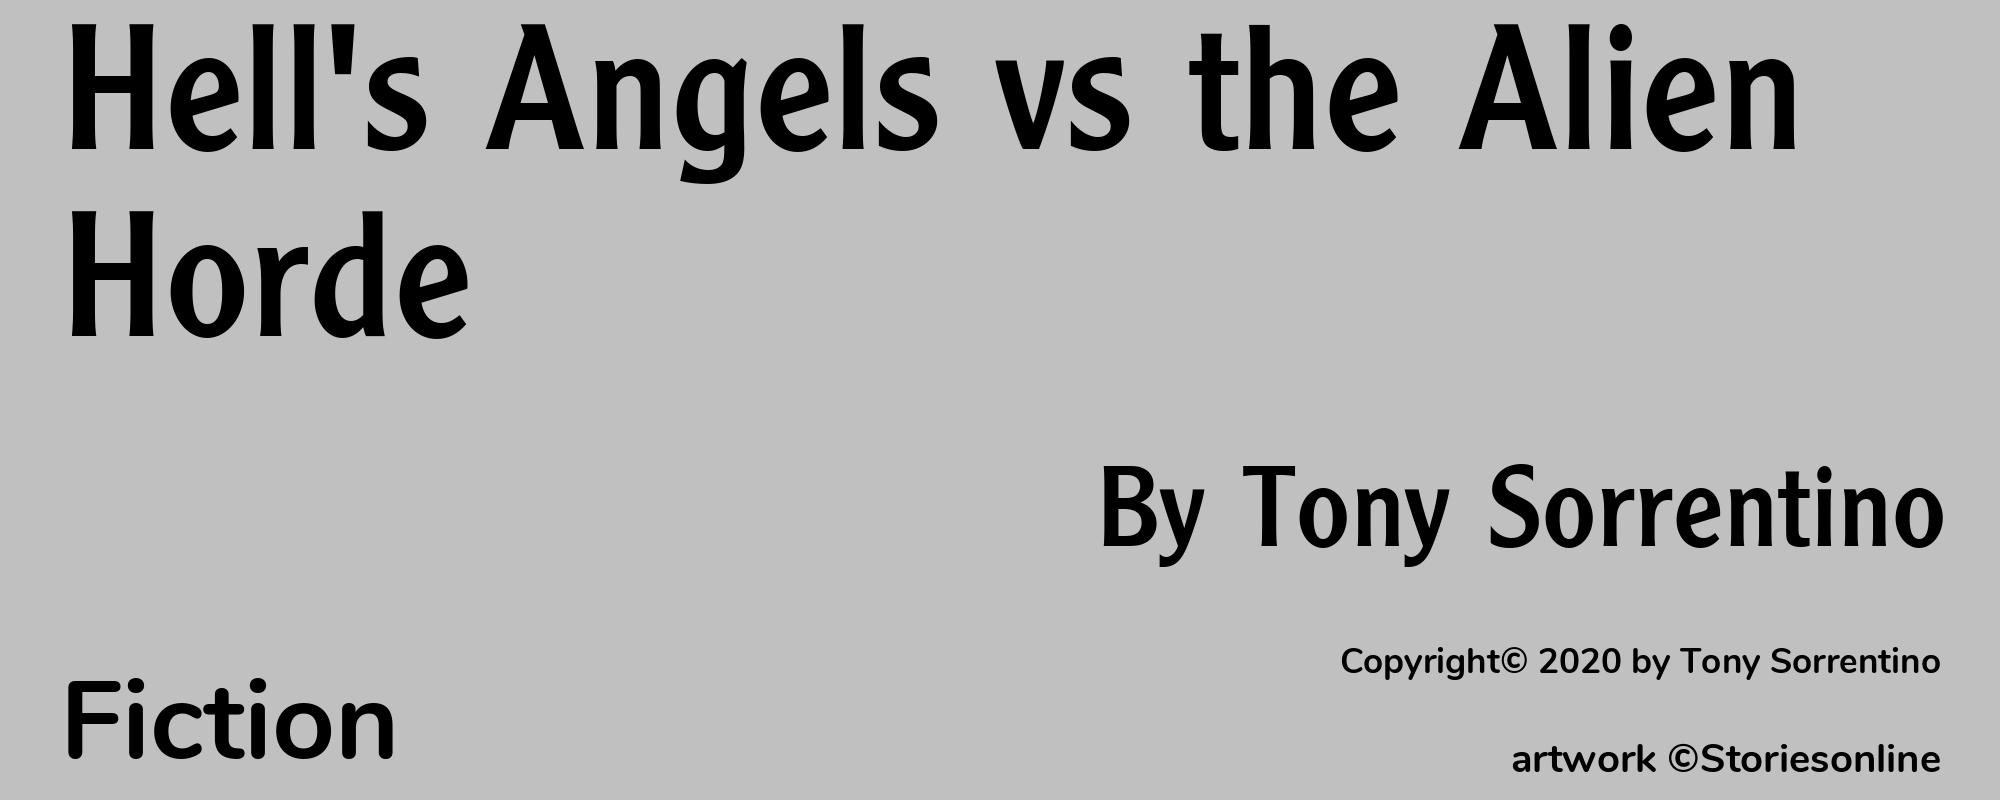 Hell's Angels vs the Alien Horde - Cover